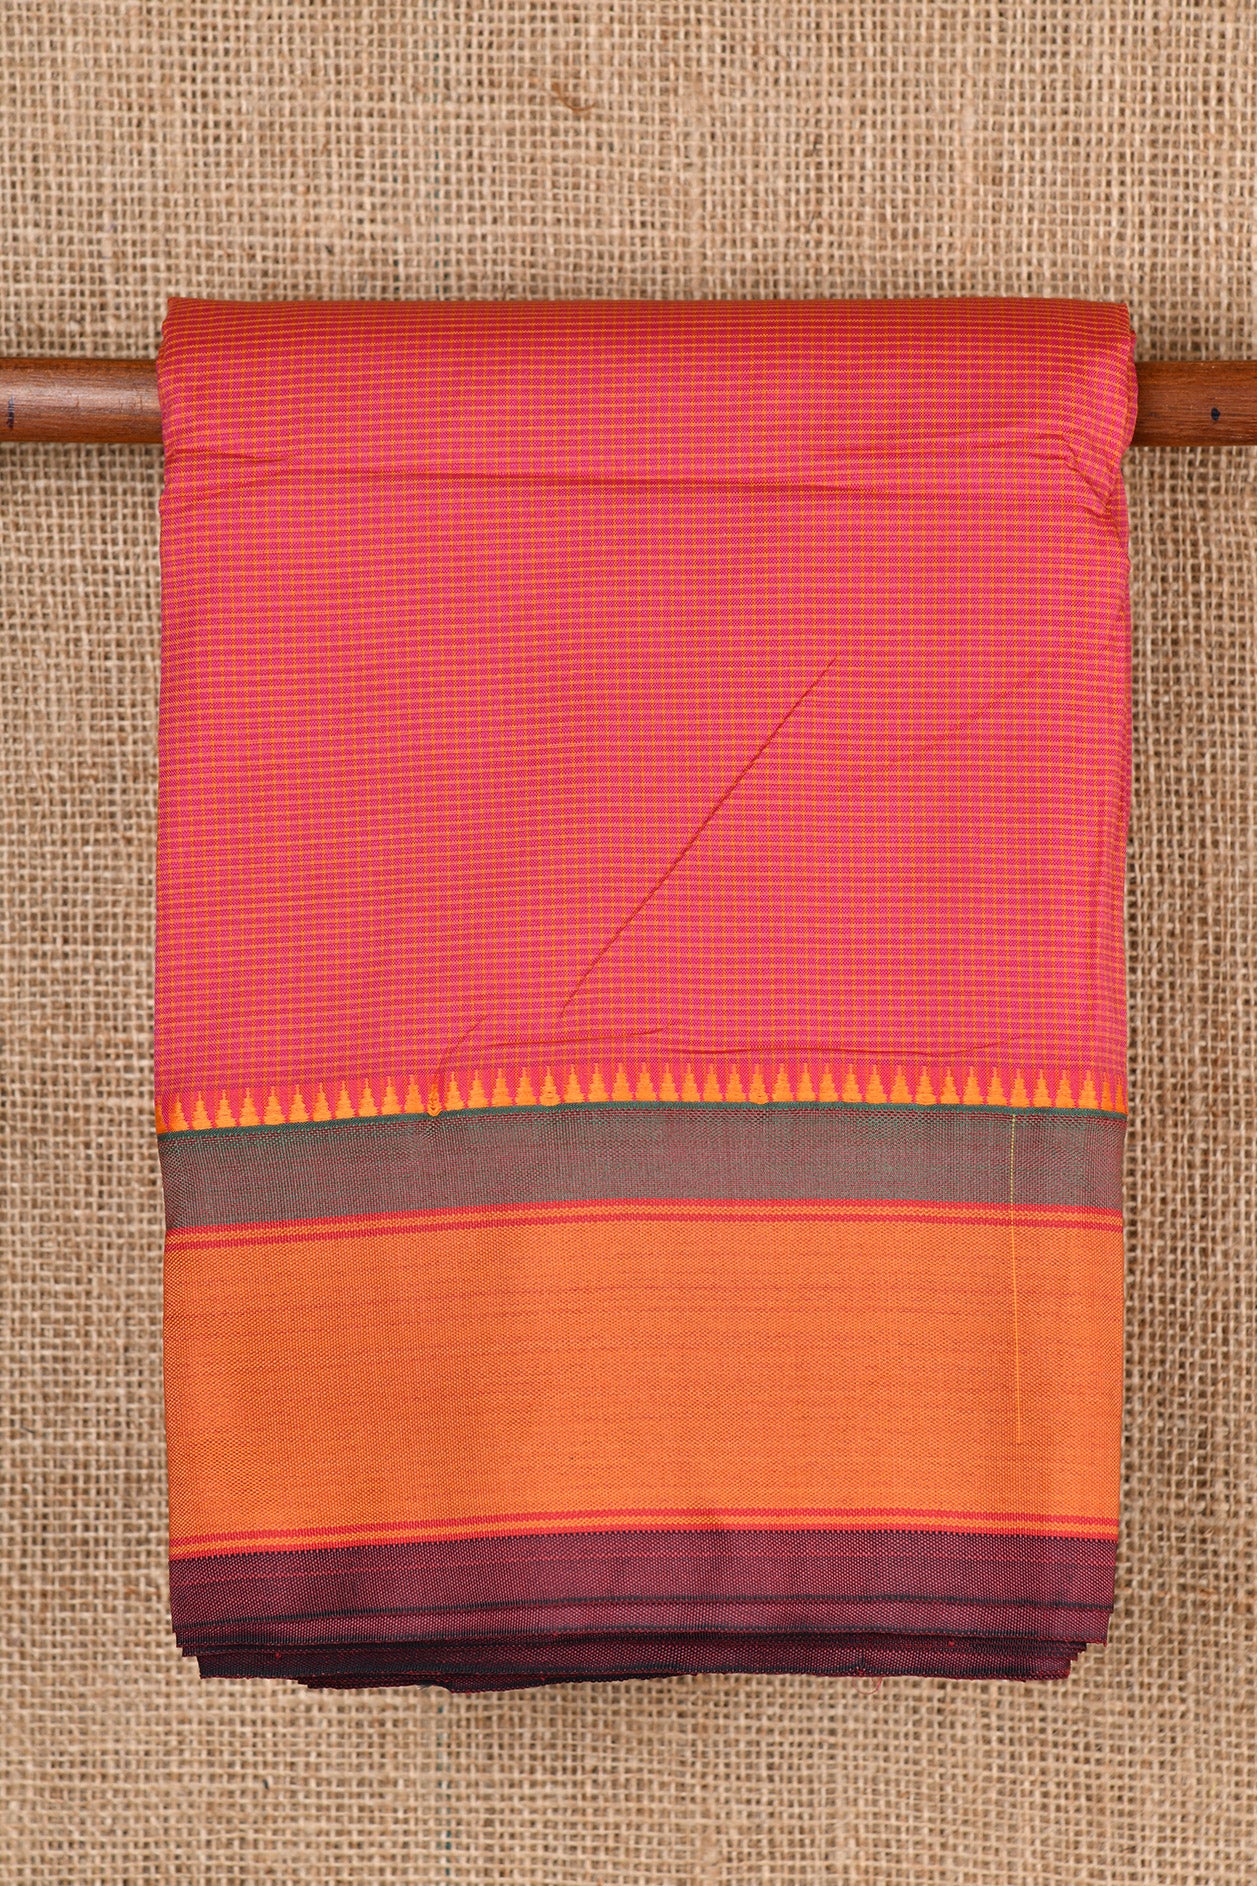 Checked Design Peach Pink Dharwad Cotton Saree